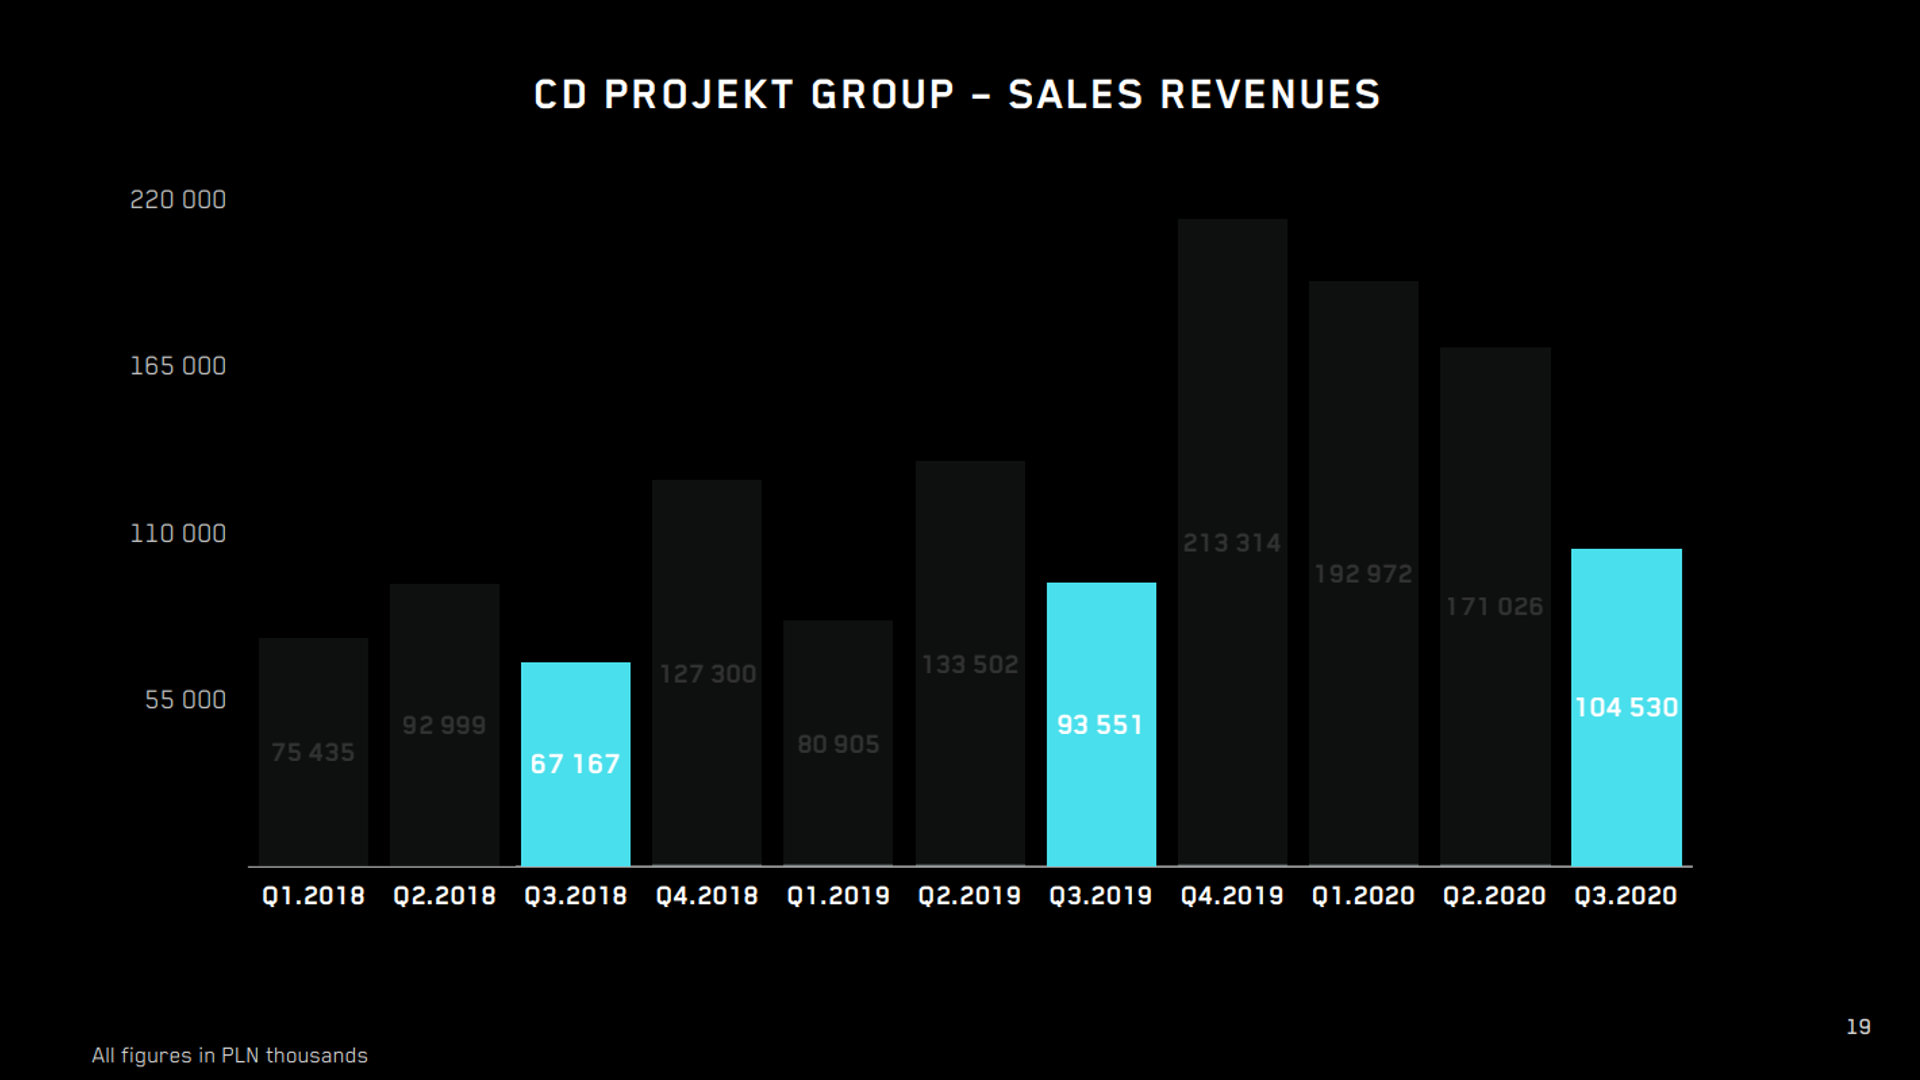 CD Projekt Red sales revenues Q3 2020 FY